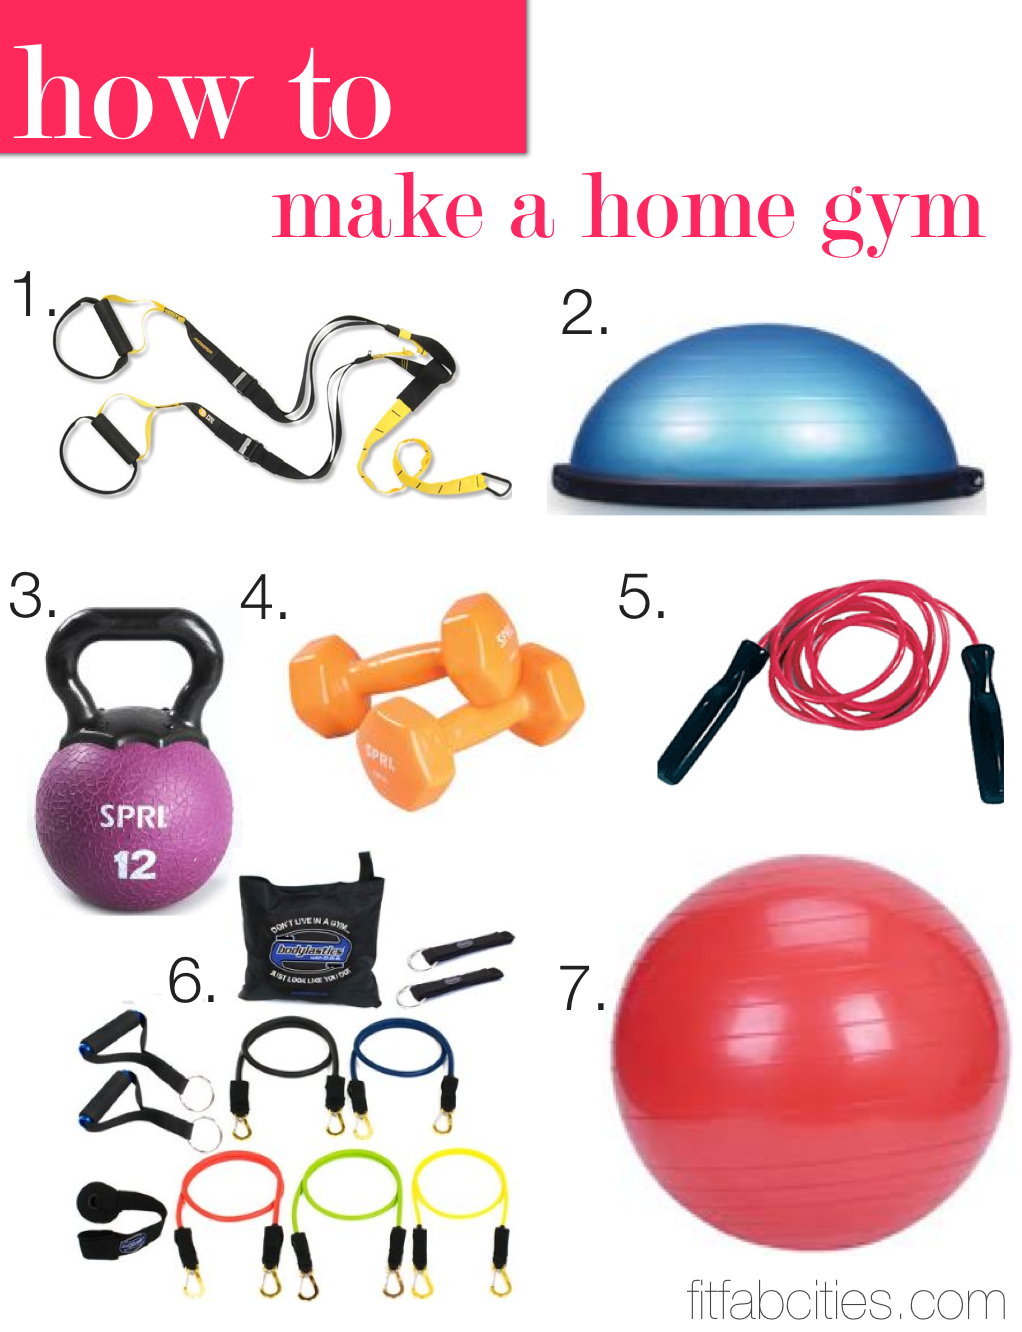 How To Make a Home Gym